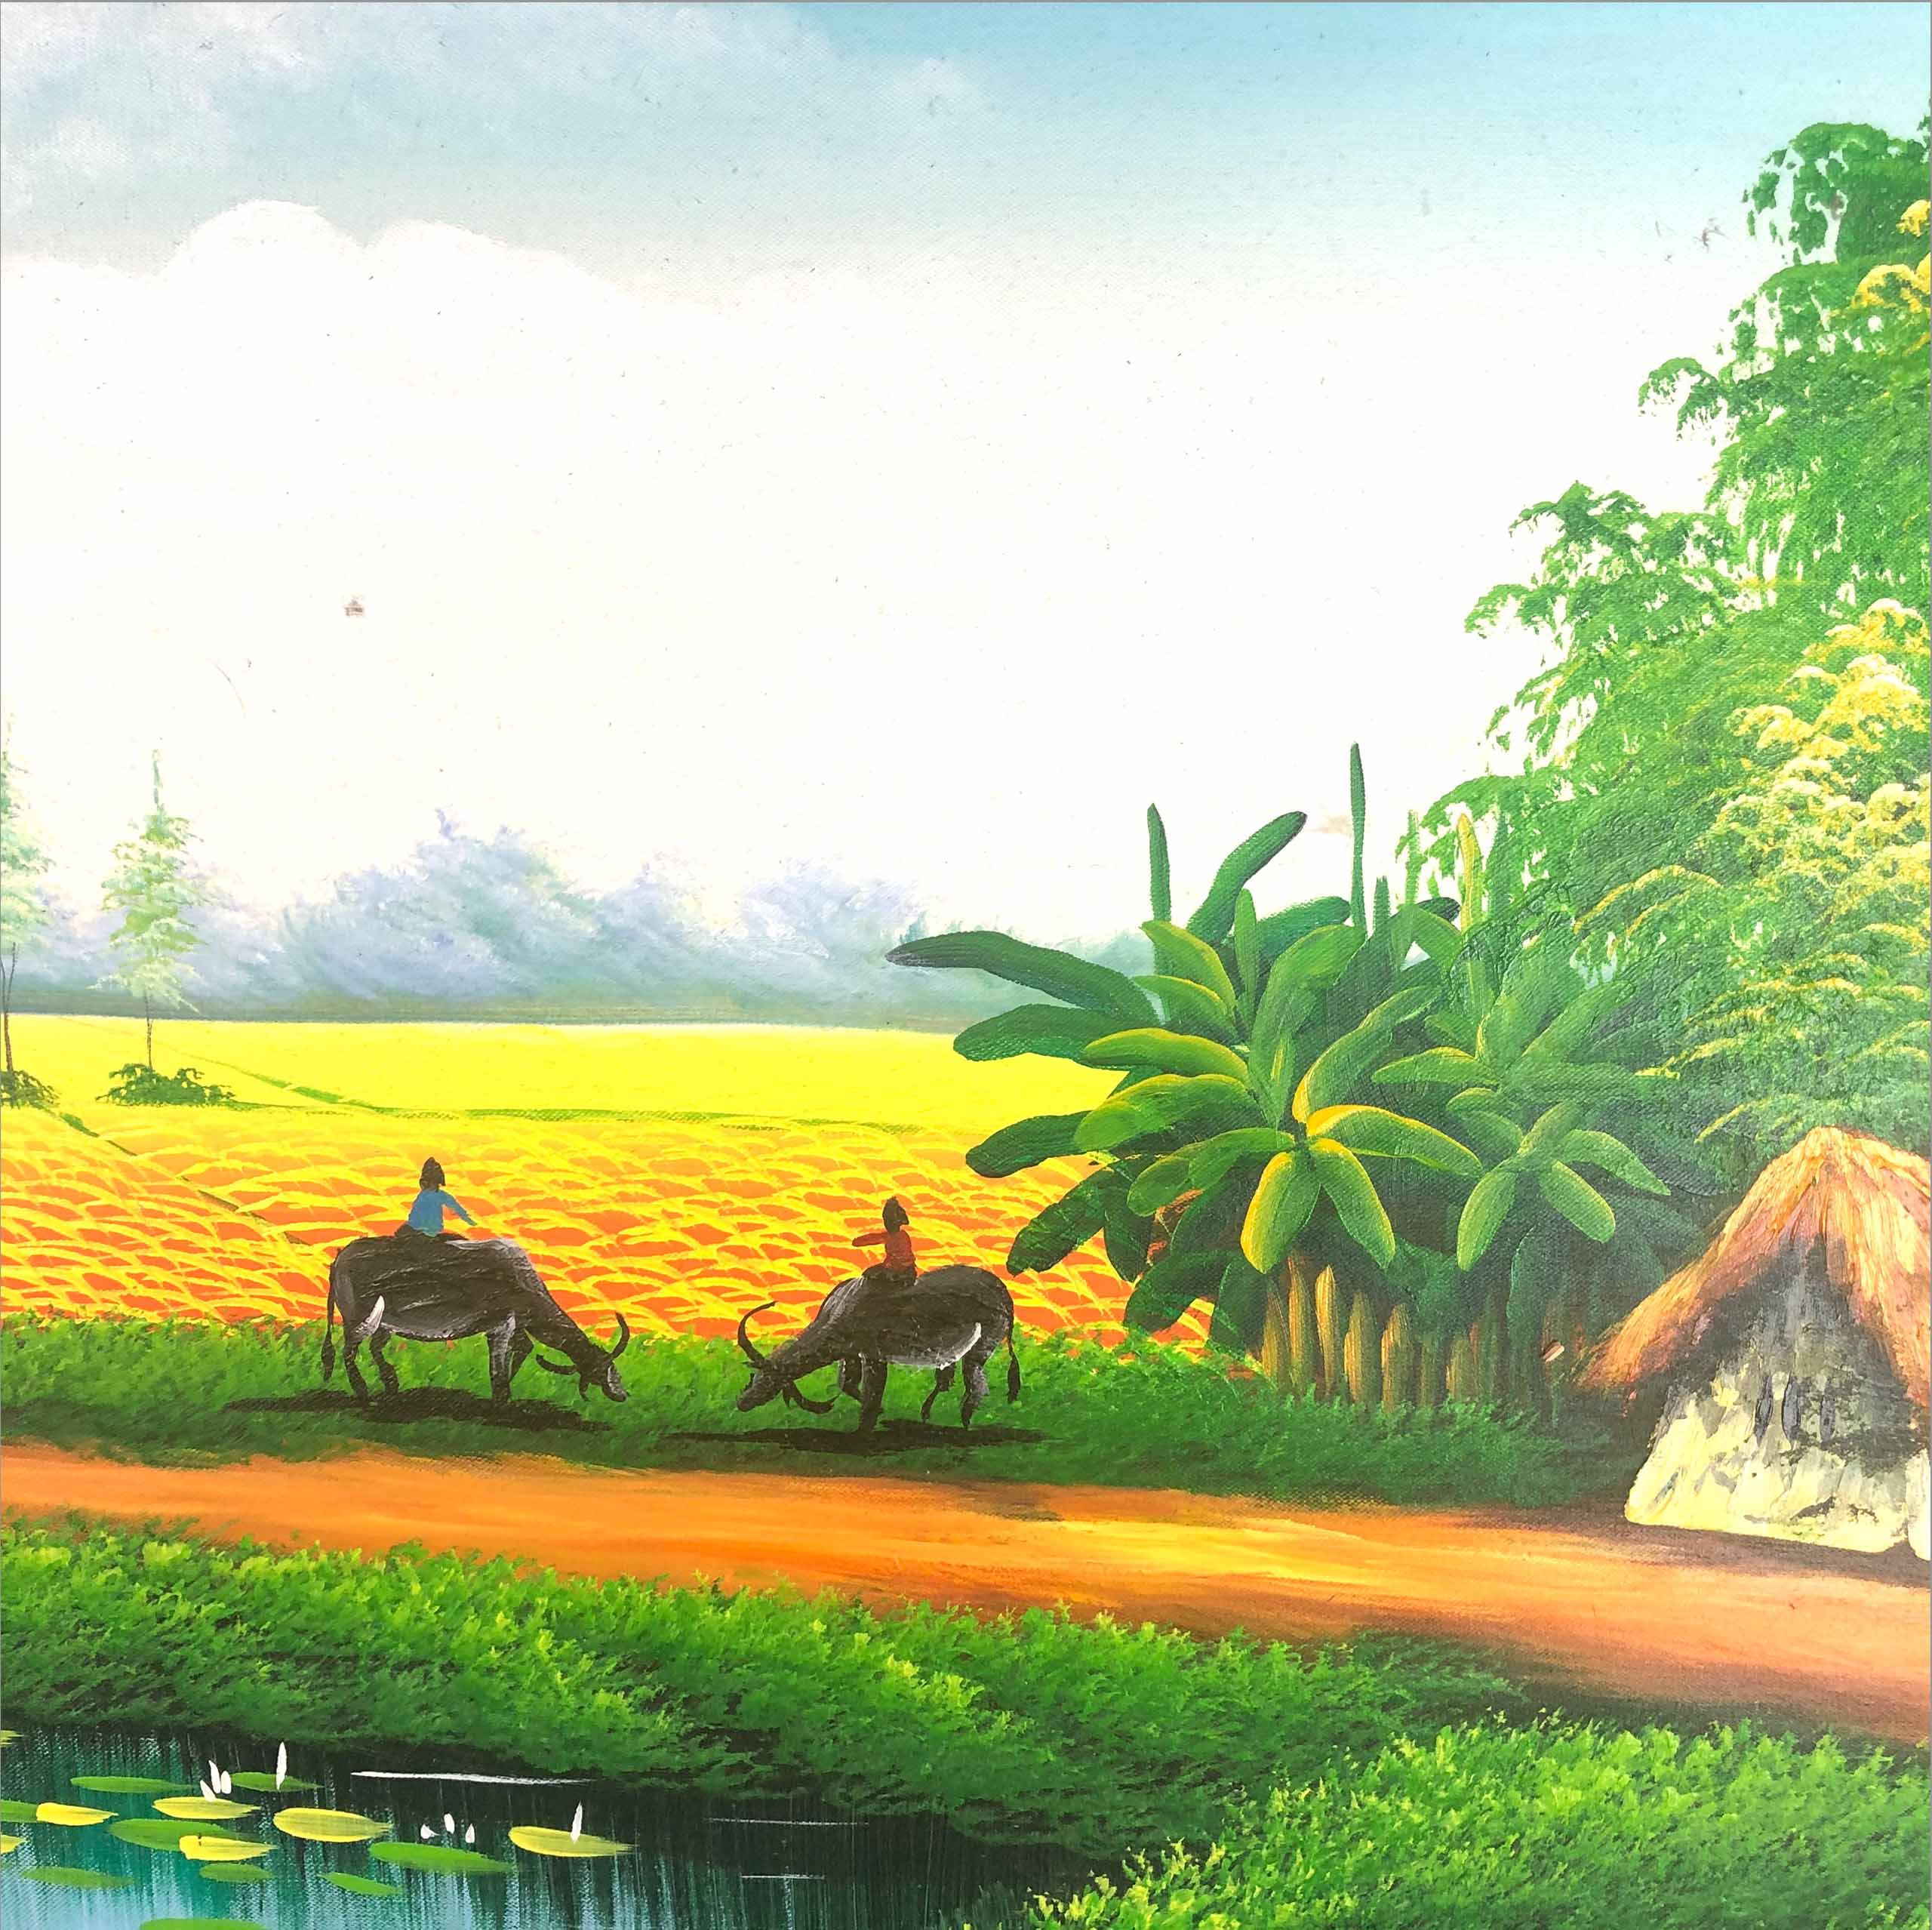 Tranh sơn dầu phong cảnh làng quê - TSD32LHAR